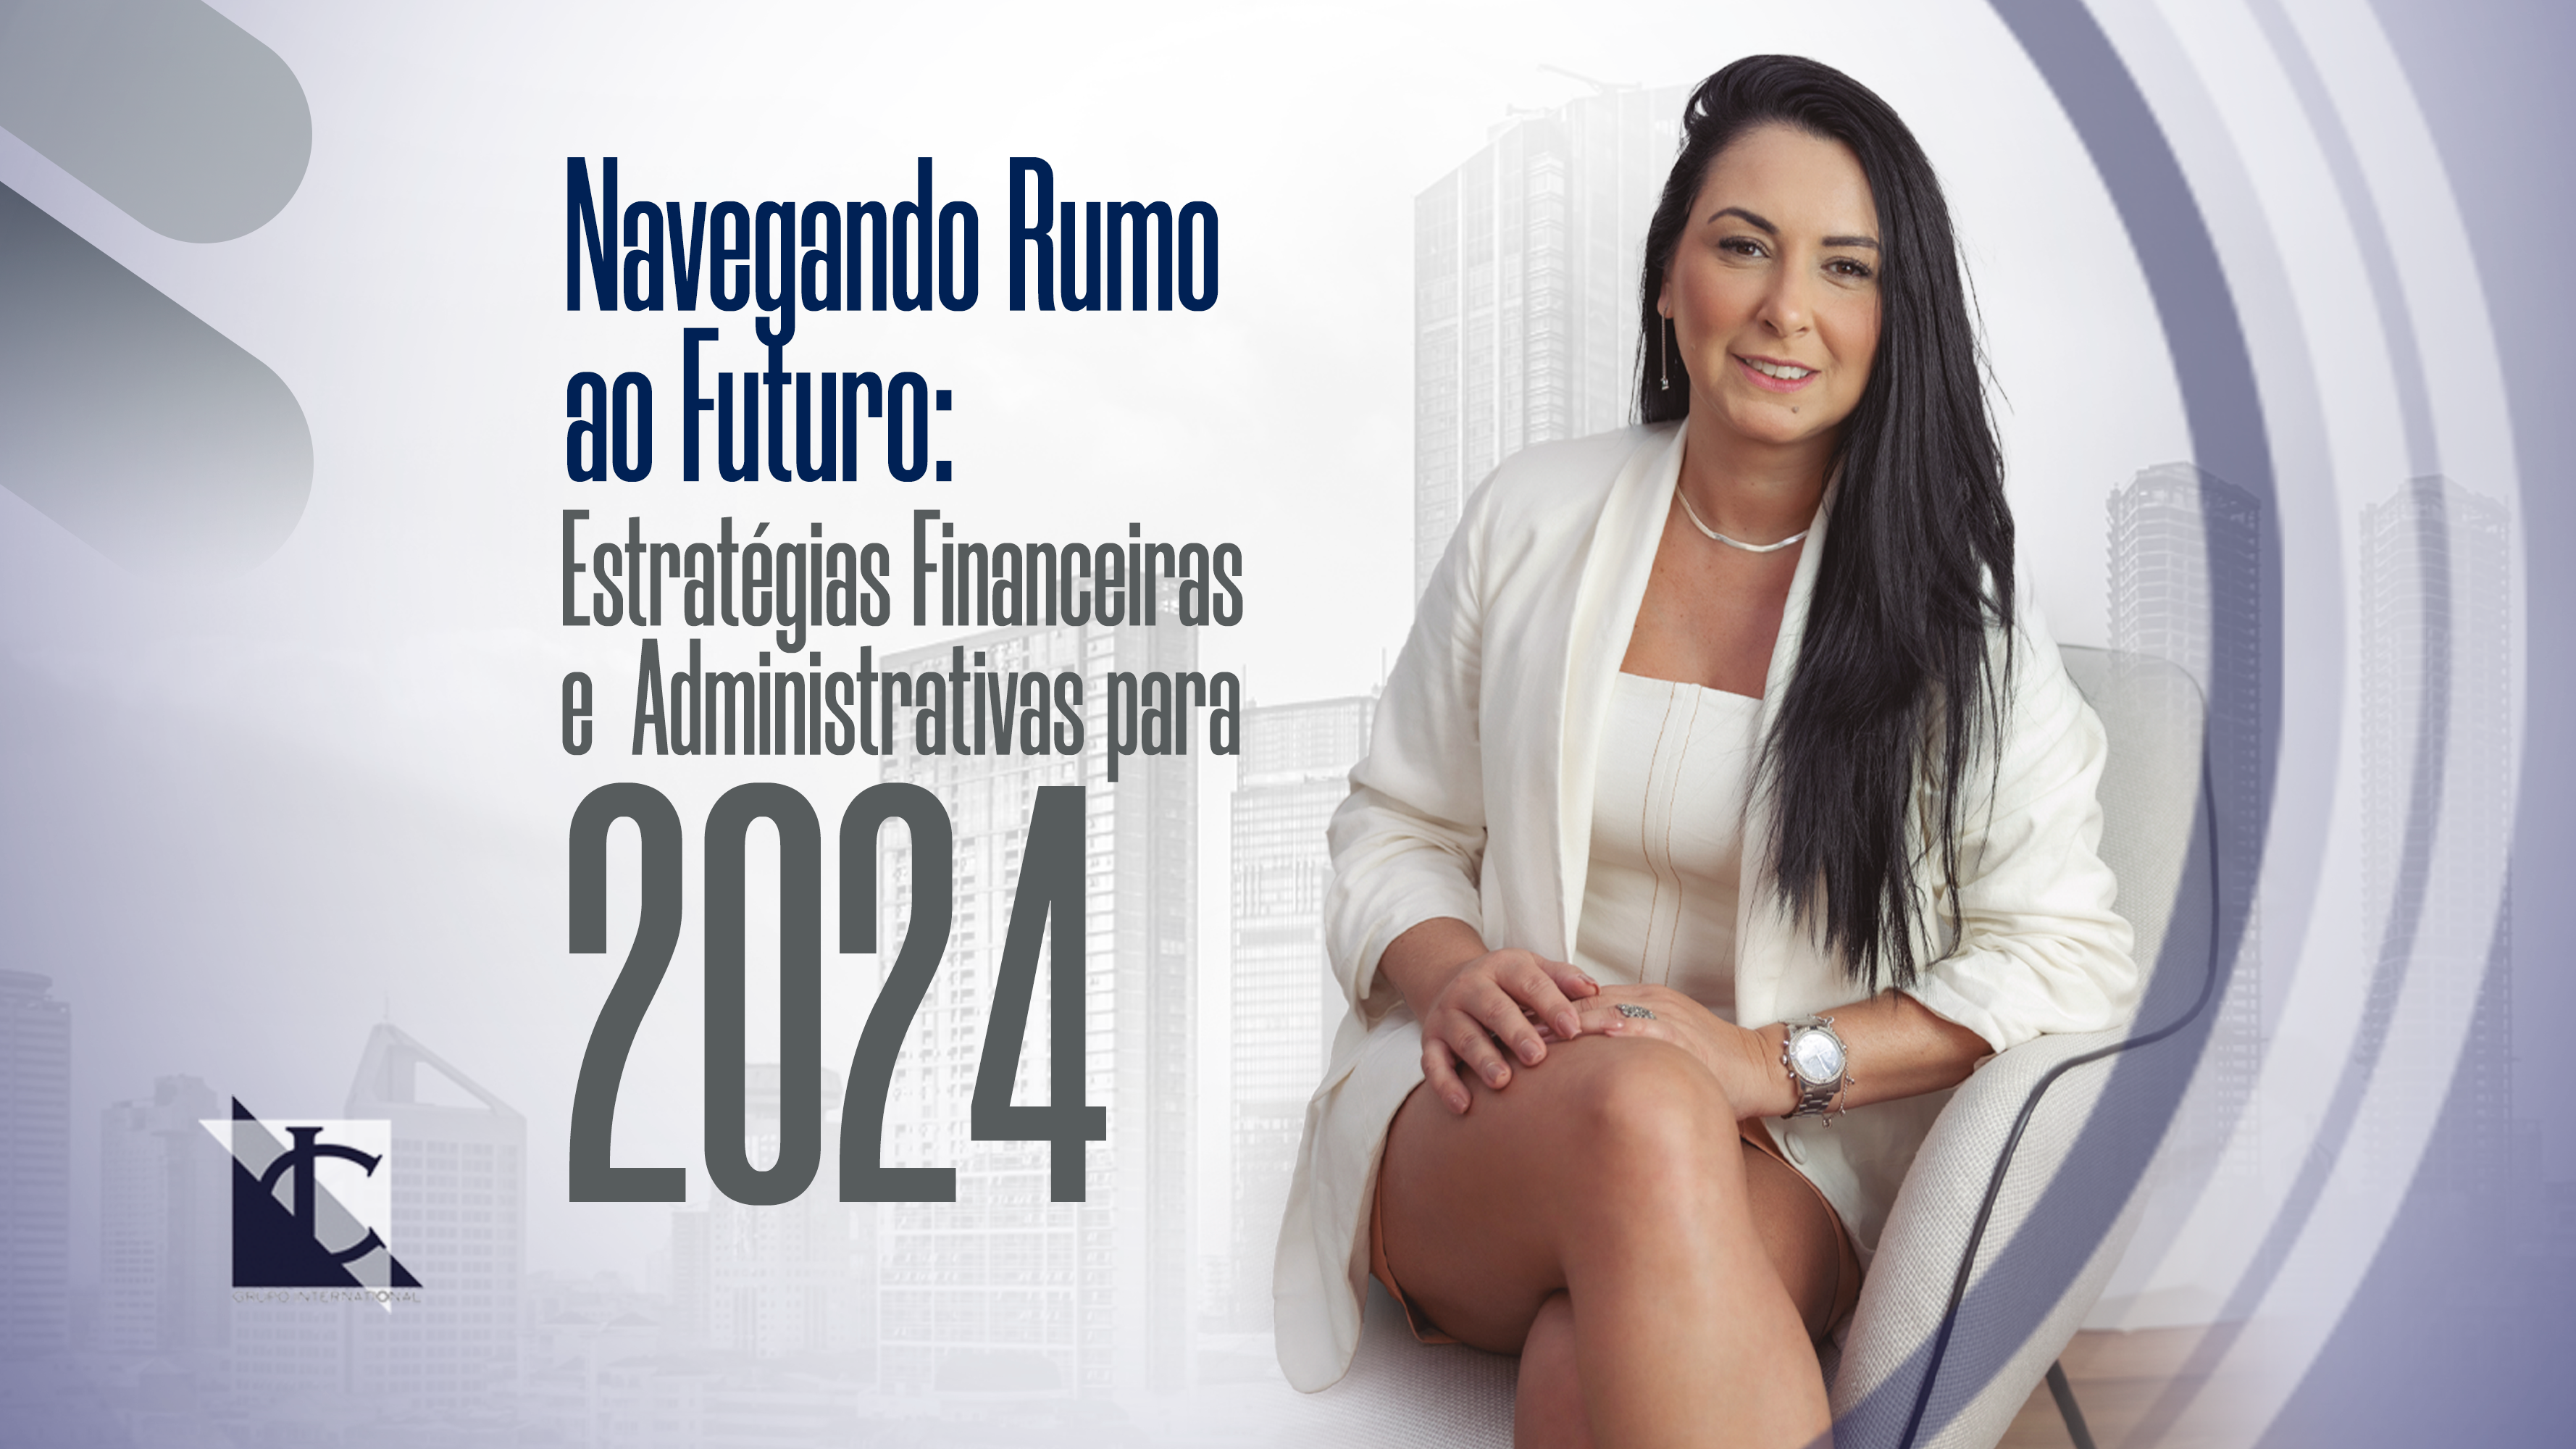 Leer más sobre Navegar hacia el futuro: estrategias financieras y administrativas para 2024